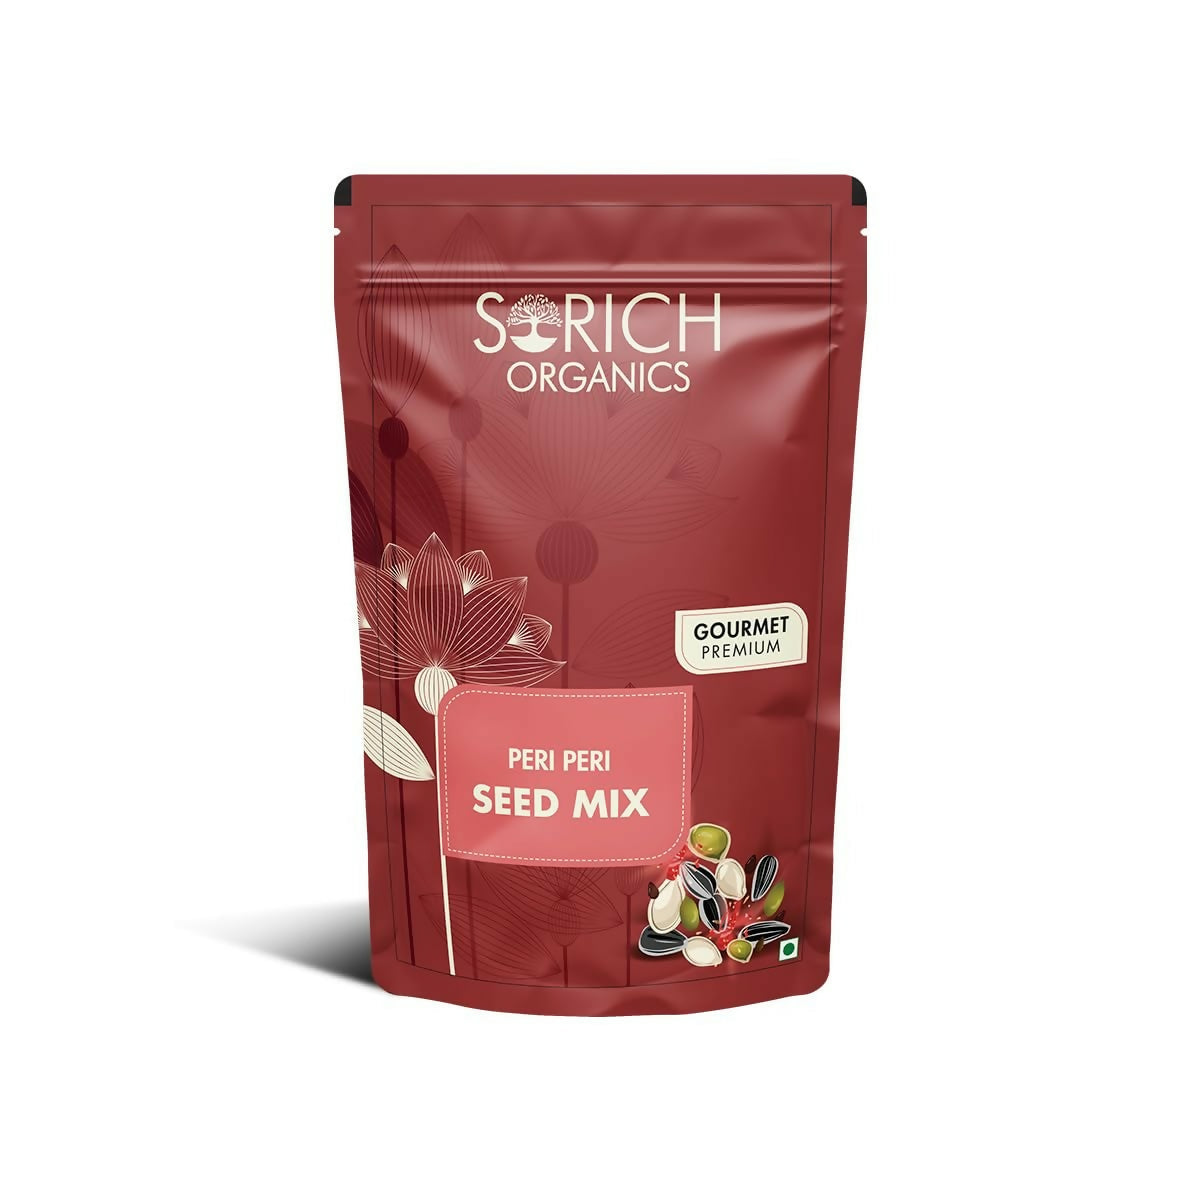 Sorich Organics Peri Peri Seed Mix - BUDNE